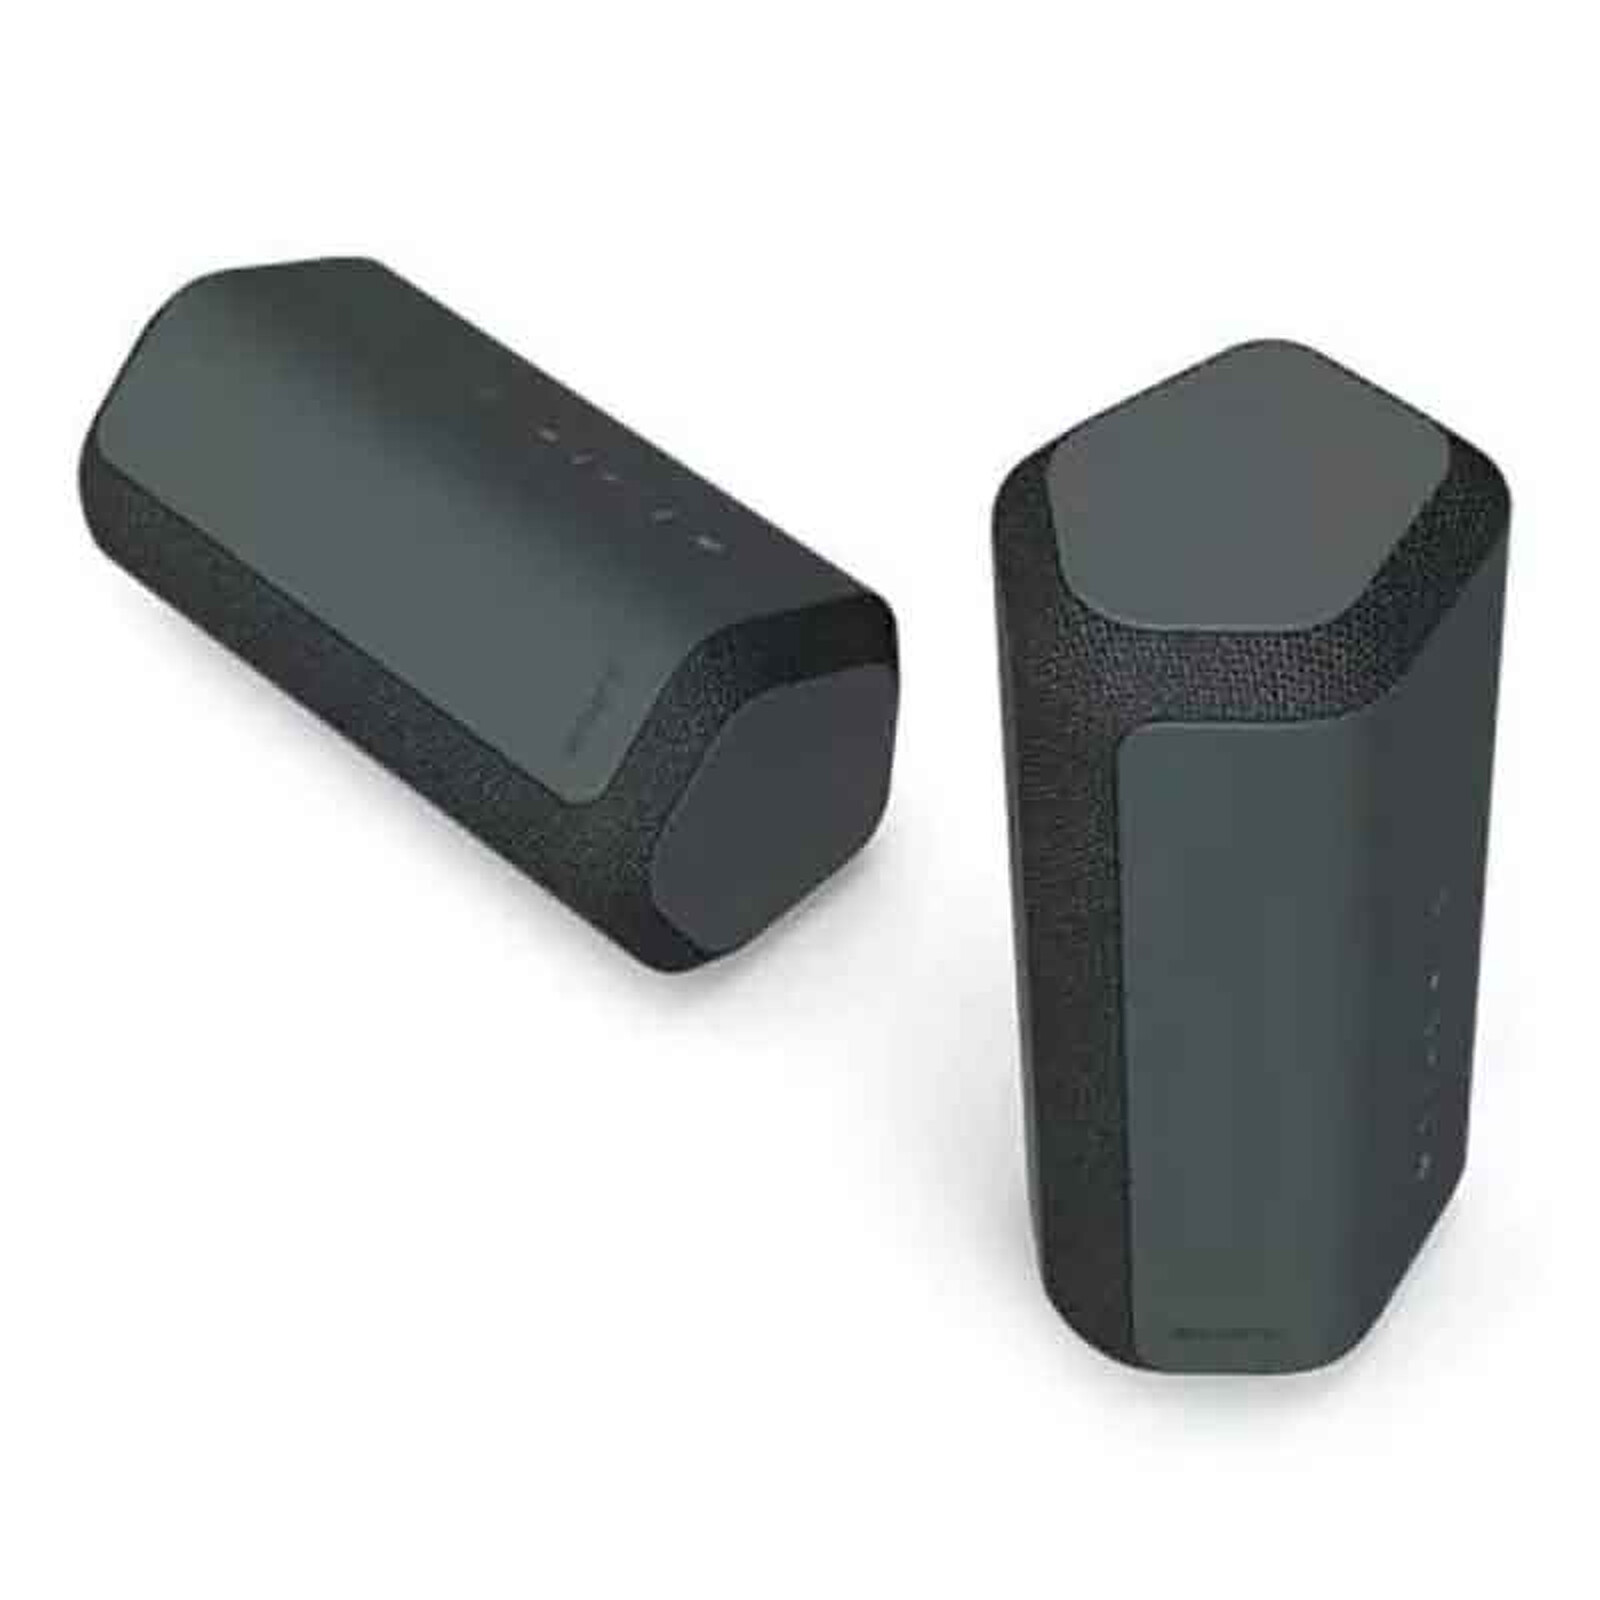 Haut-parleur sans fil portatif SRS-XE300 de Sony - Noir